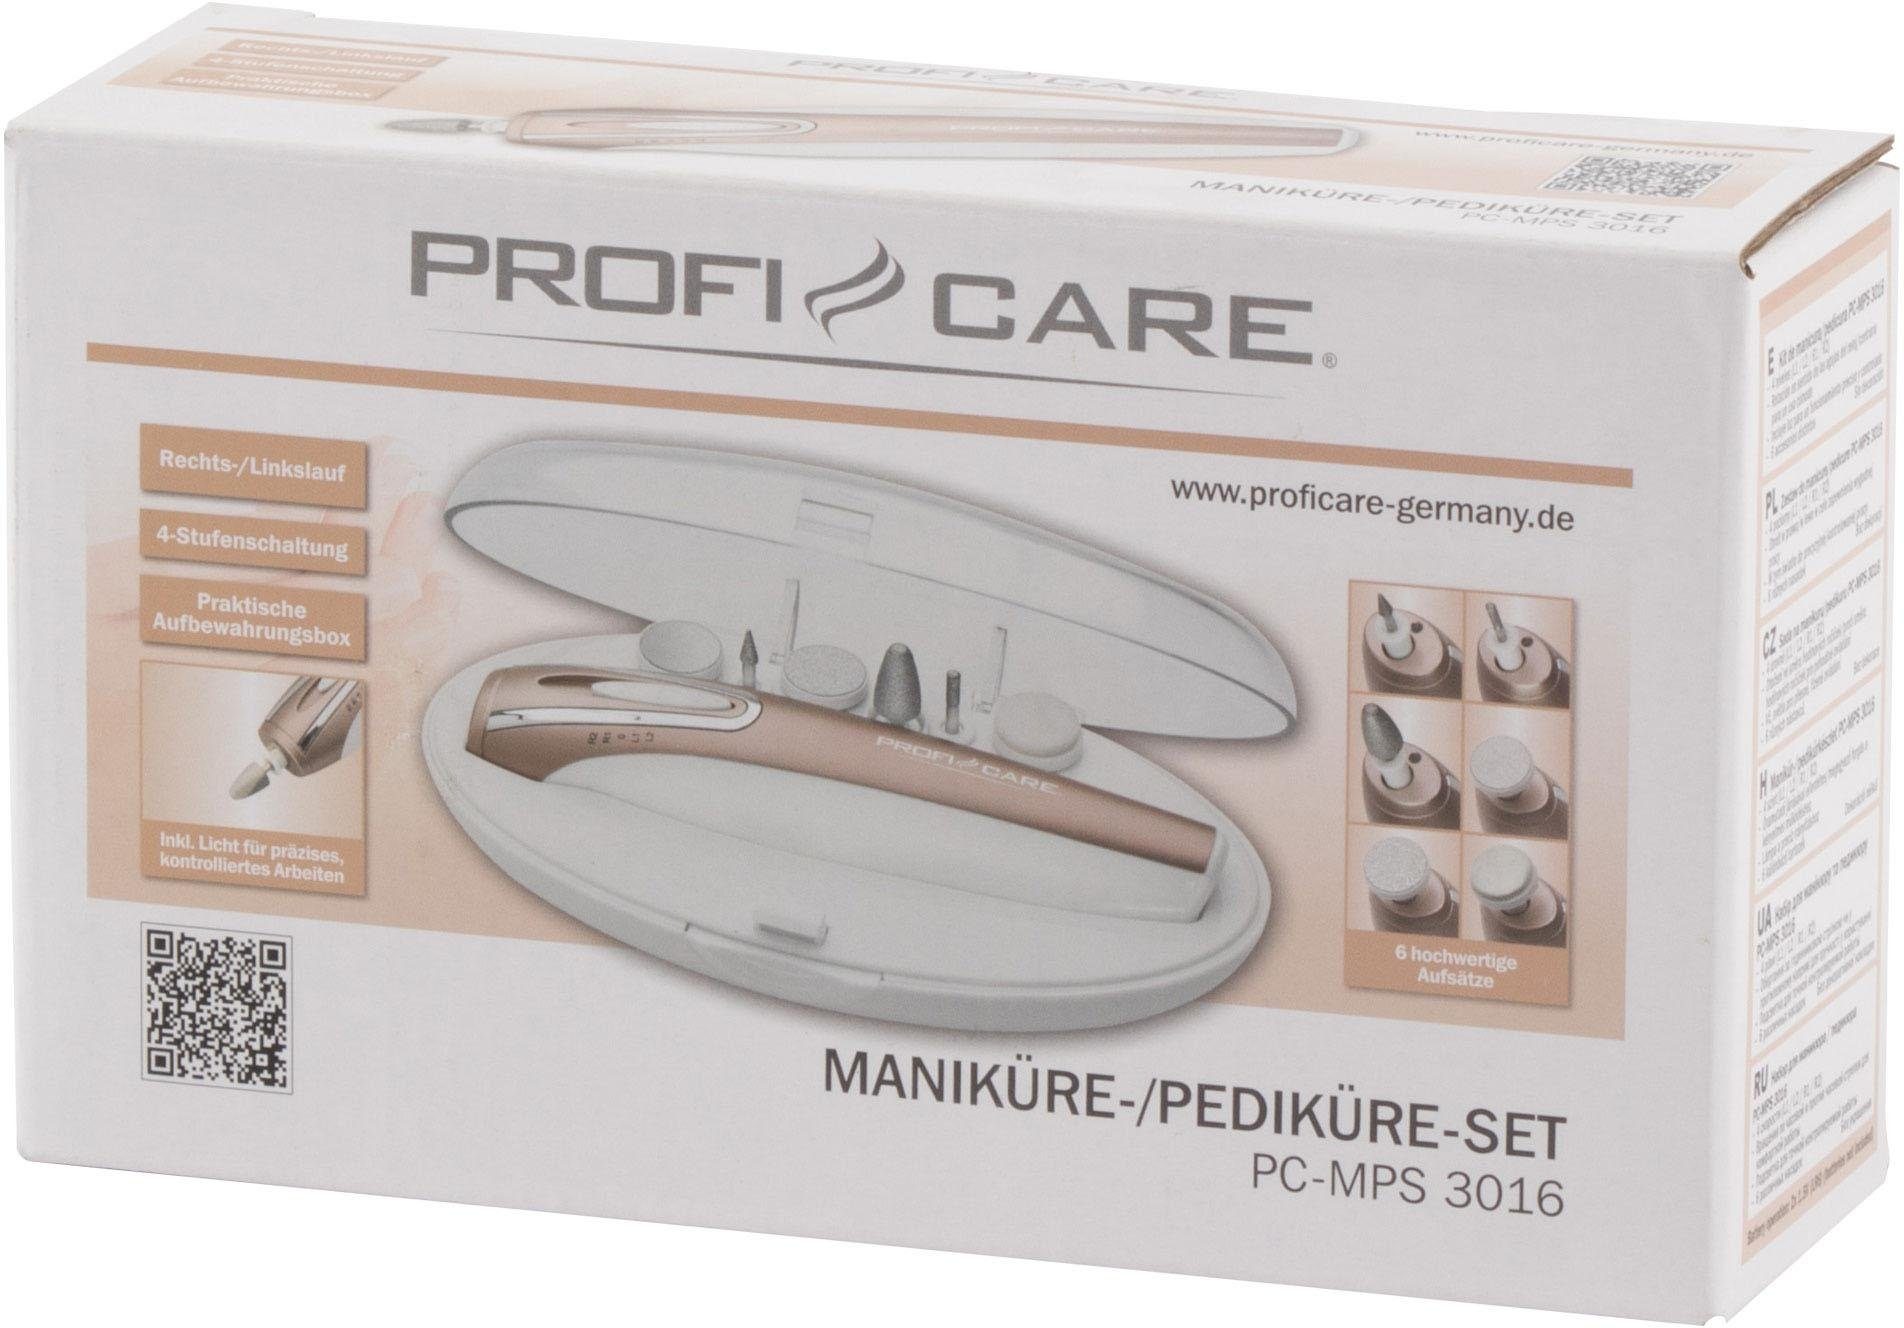 ProfiCare PC-MPS Maniküre-Pediküre-Set 3016